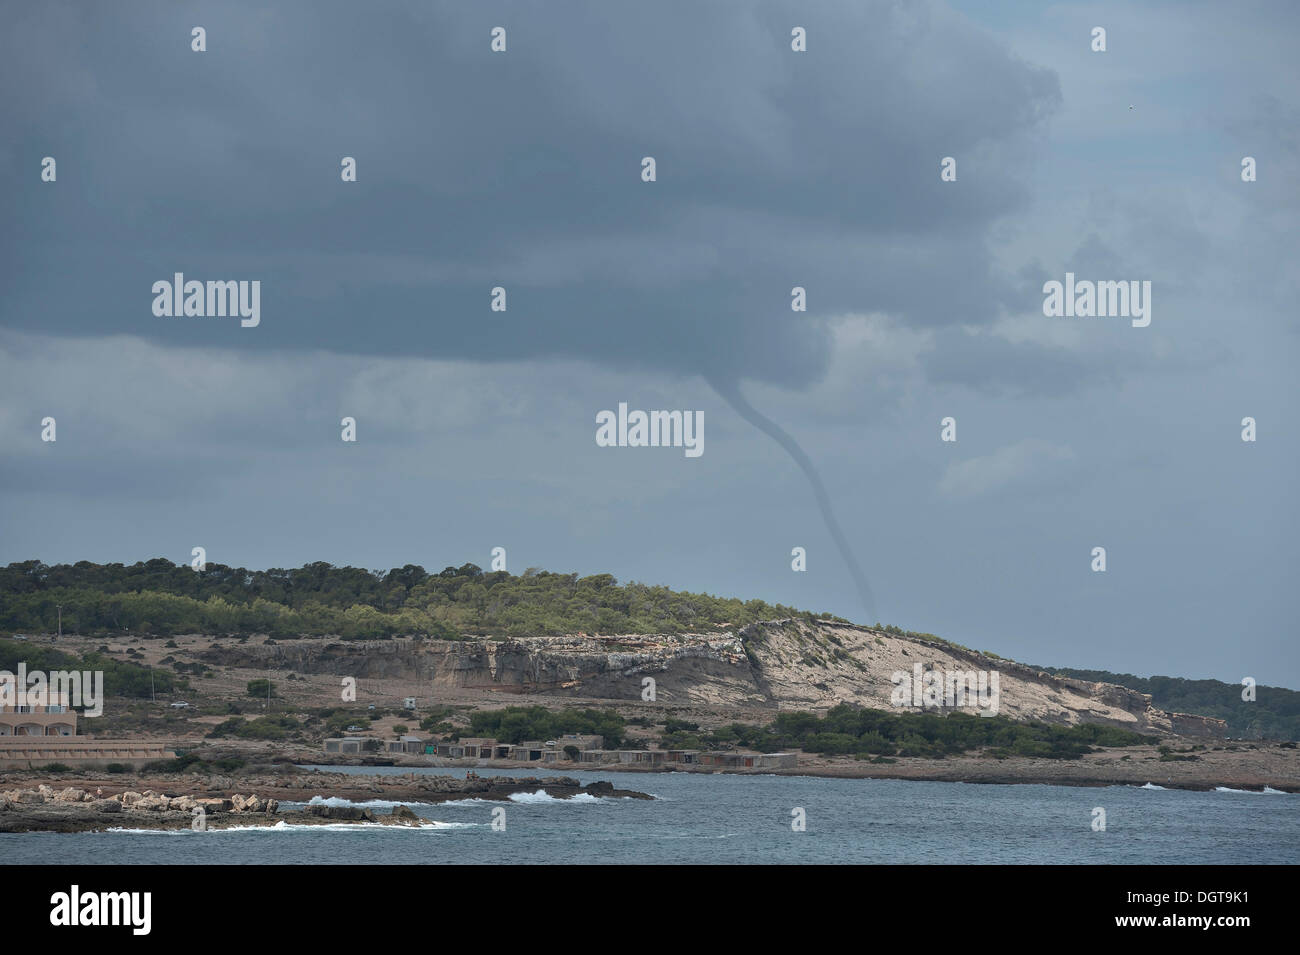 Tornado vicino a Sant Antoni, Ibiza, Pitiusic isole o isole di pino, isole Baleari, Spagna, Europa Foto Stock